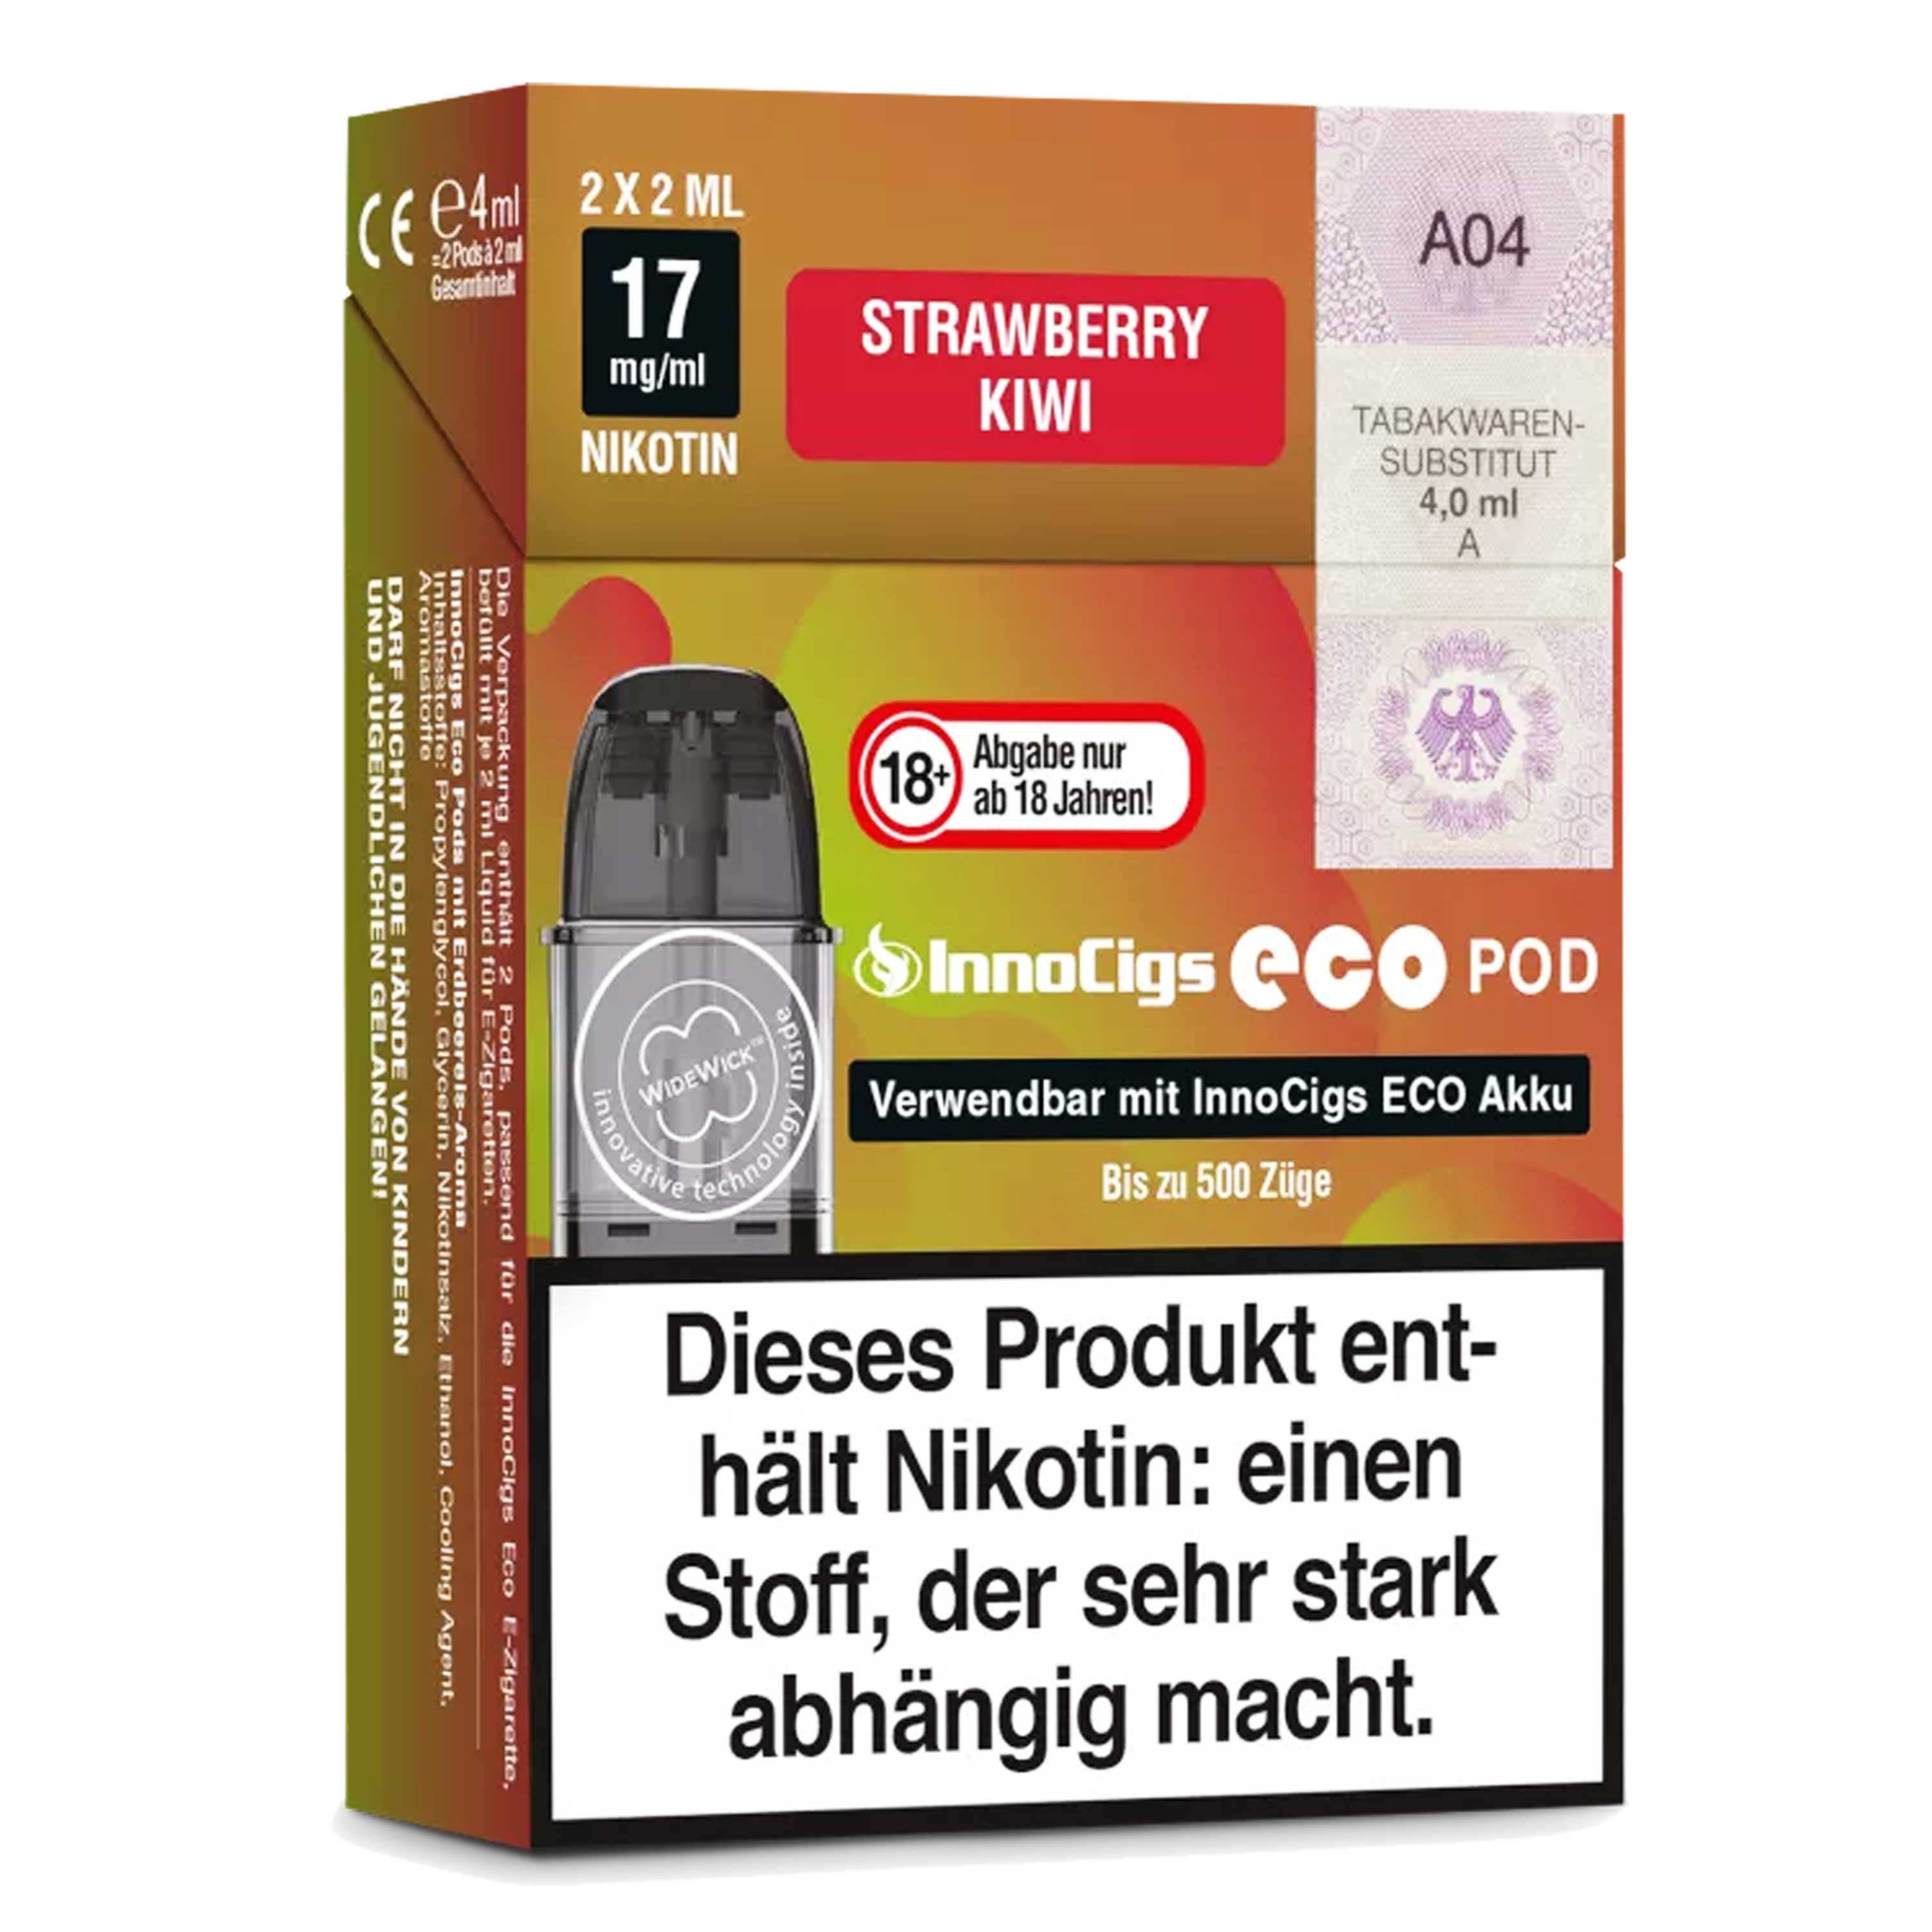 Innocigs - Eco Pod - Strawberry Kiwi (2 x 2 ml) - Pod (2 Stück)